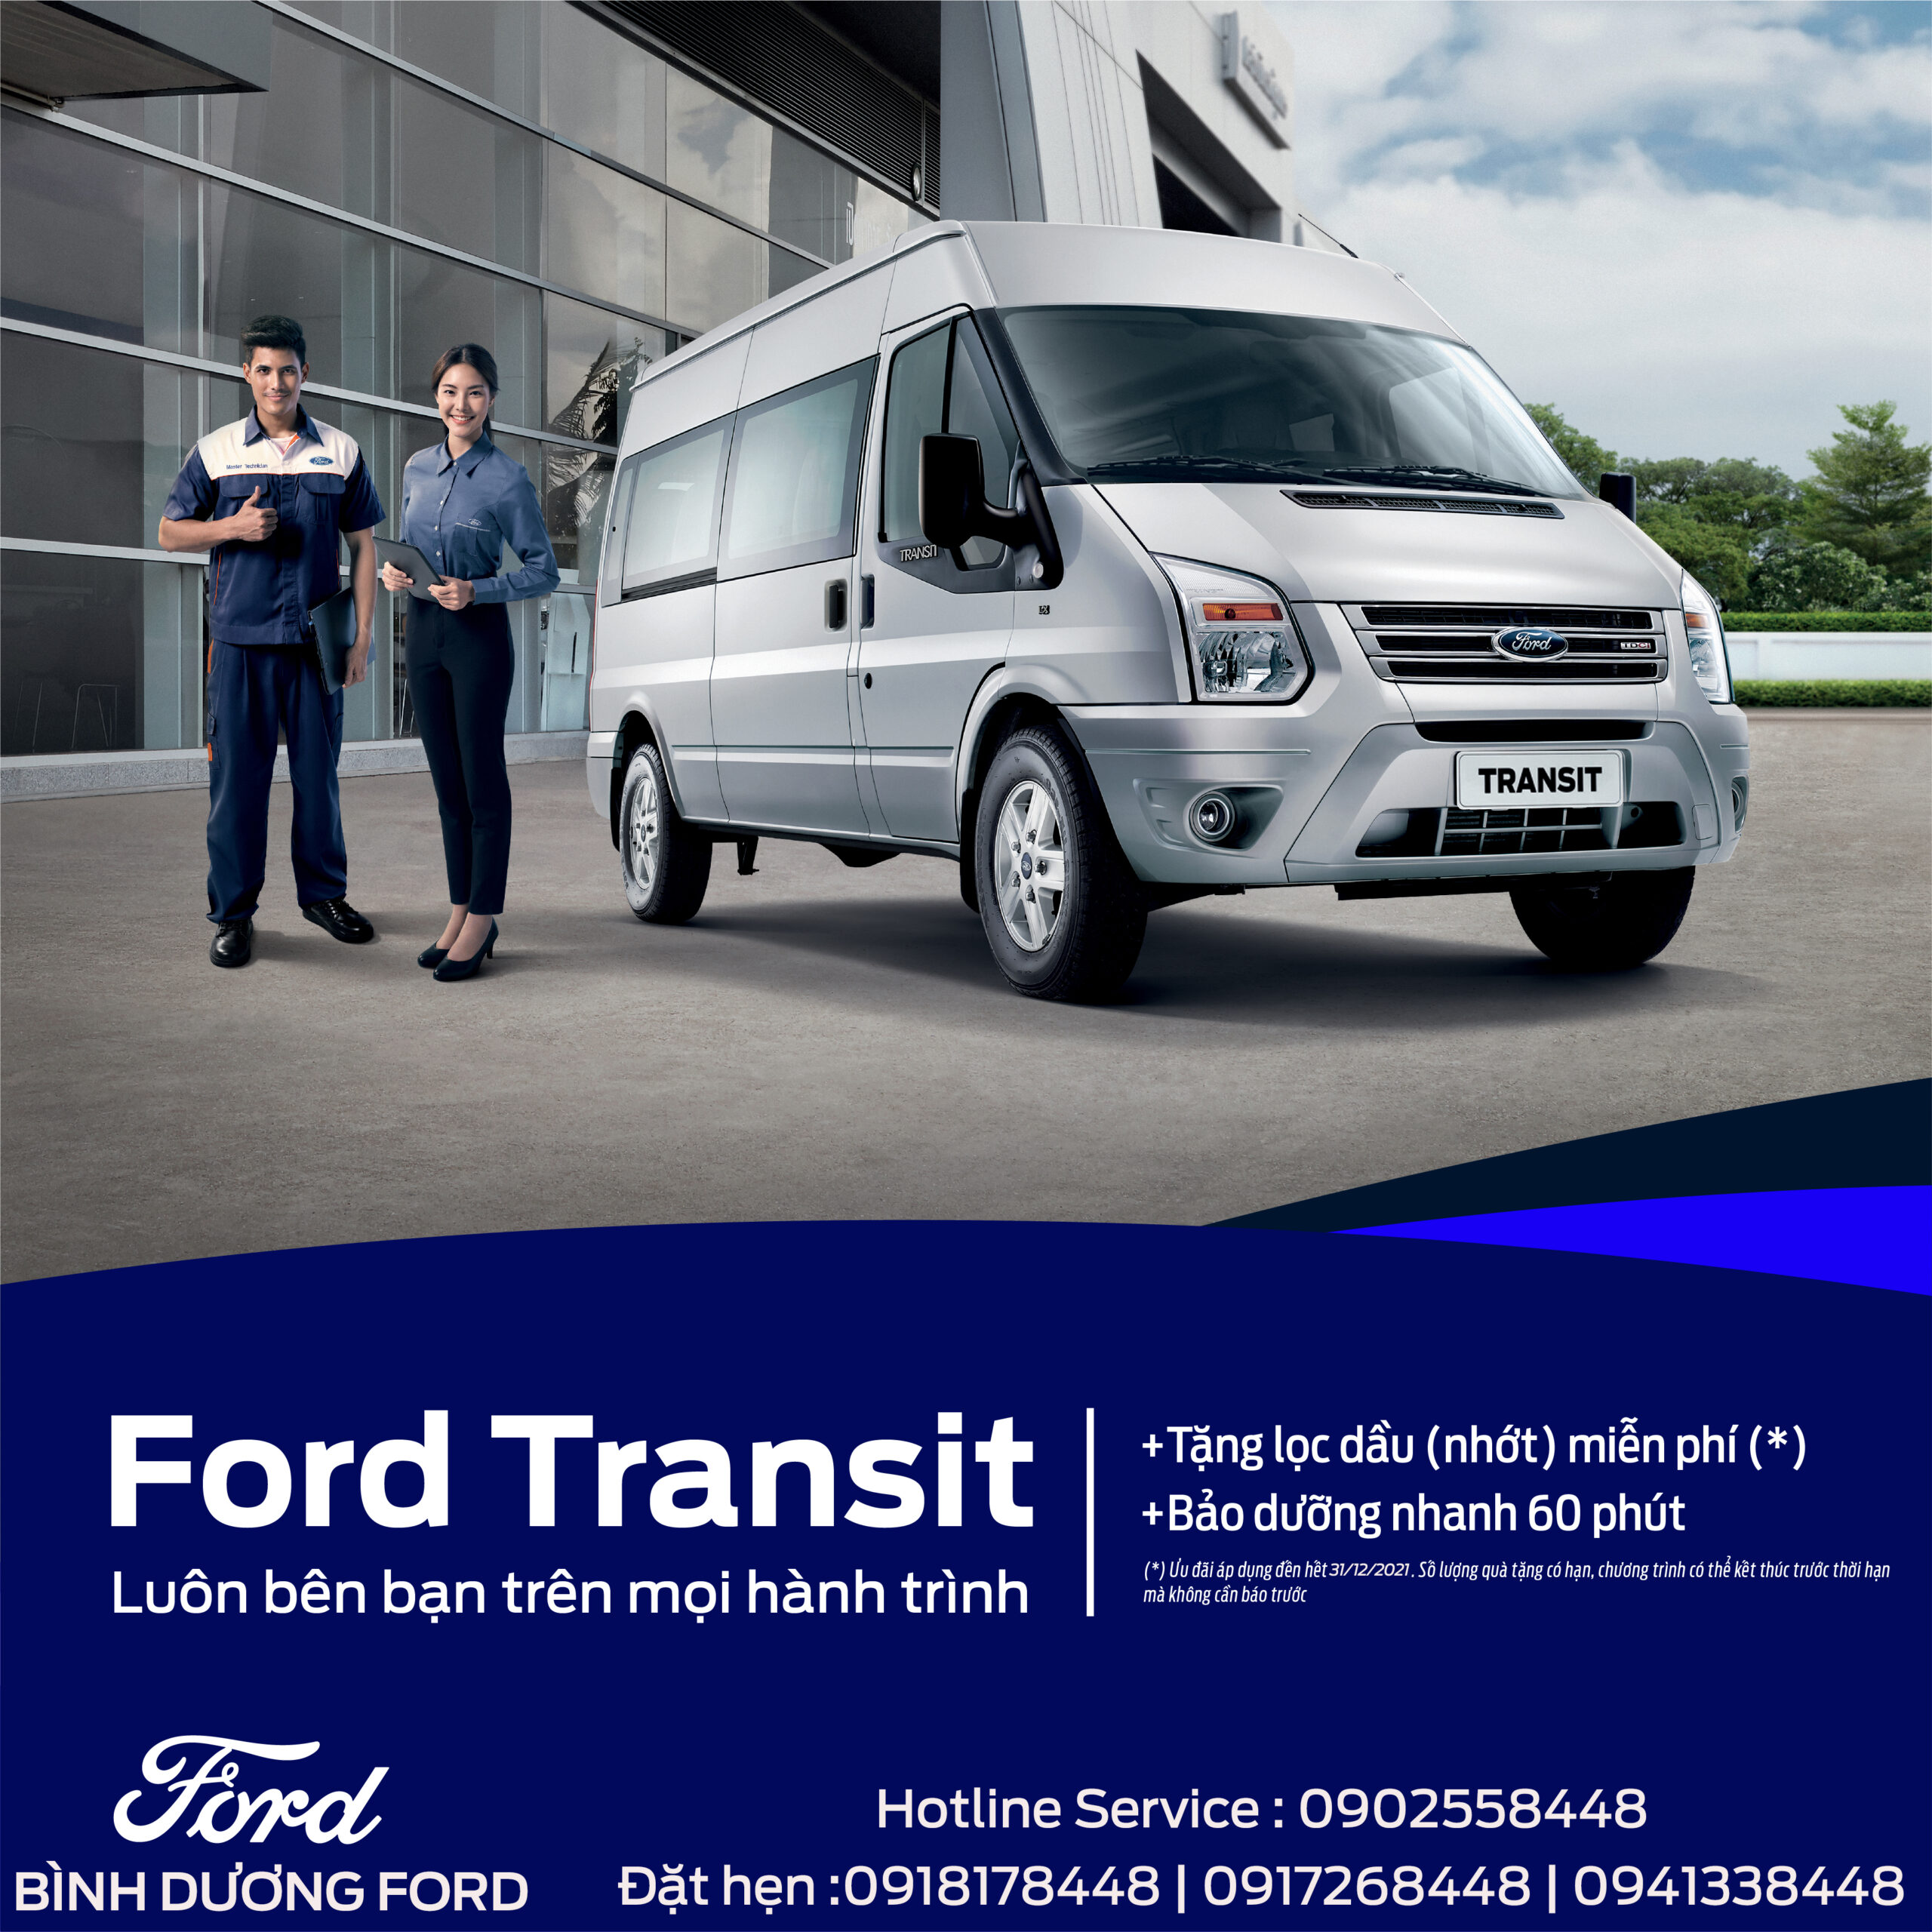 Chương trình dịch vụ dành riêng cho Ford Transit